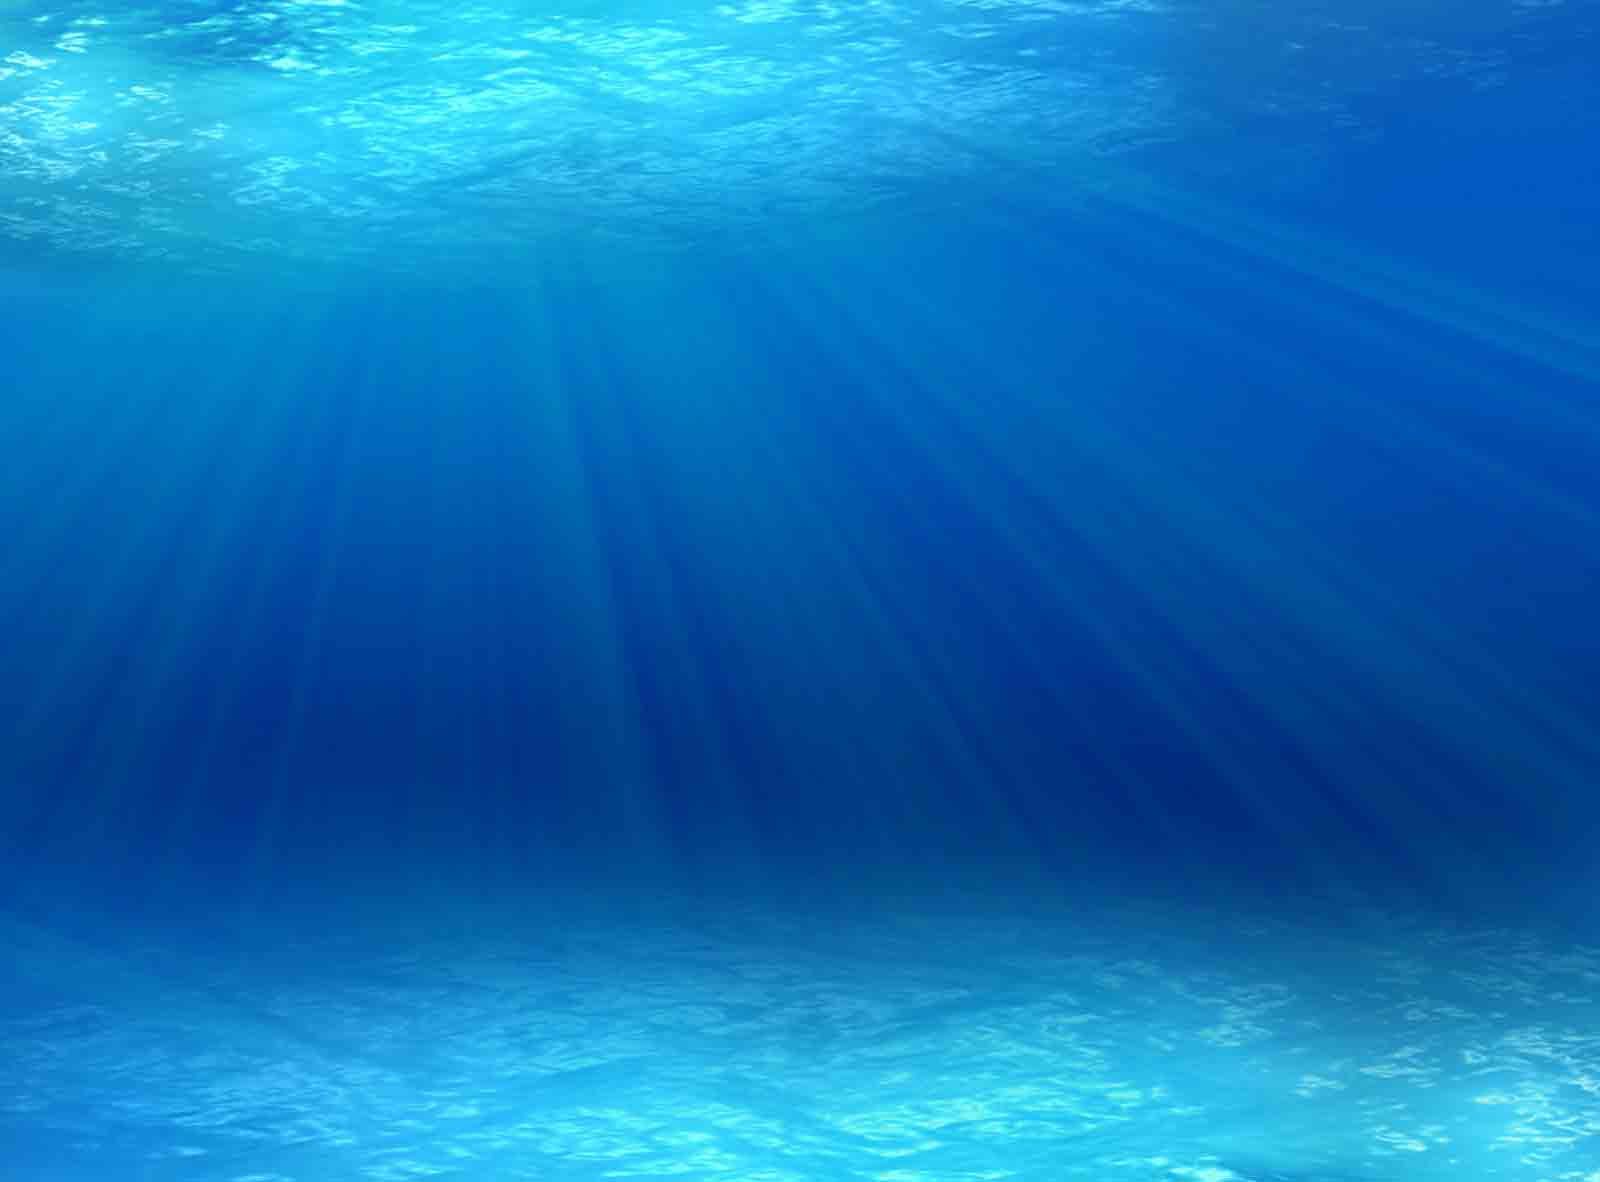 Under the Sea. Ocean image, Under the sea image, Sea and ocean